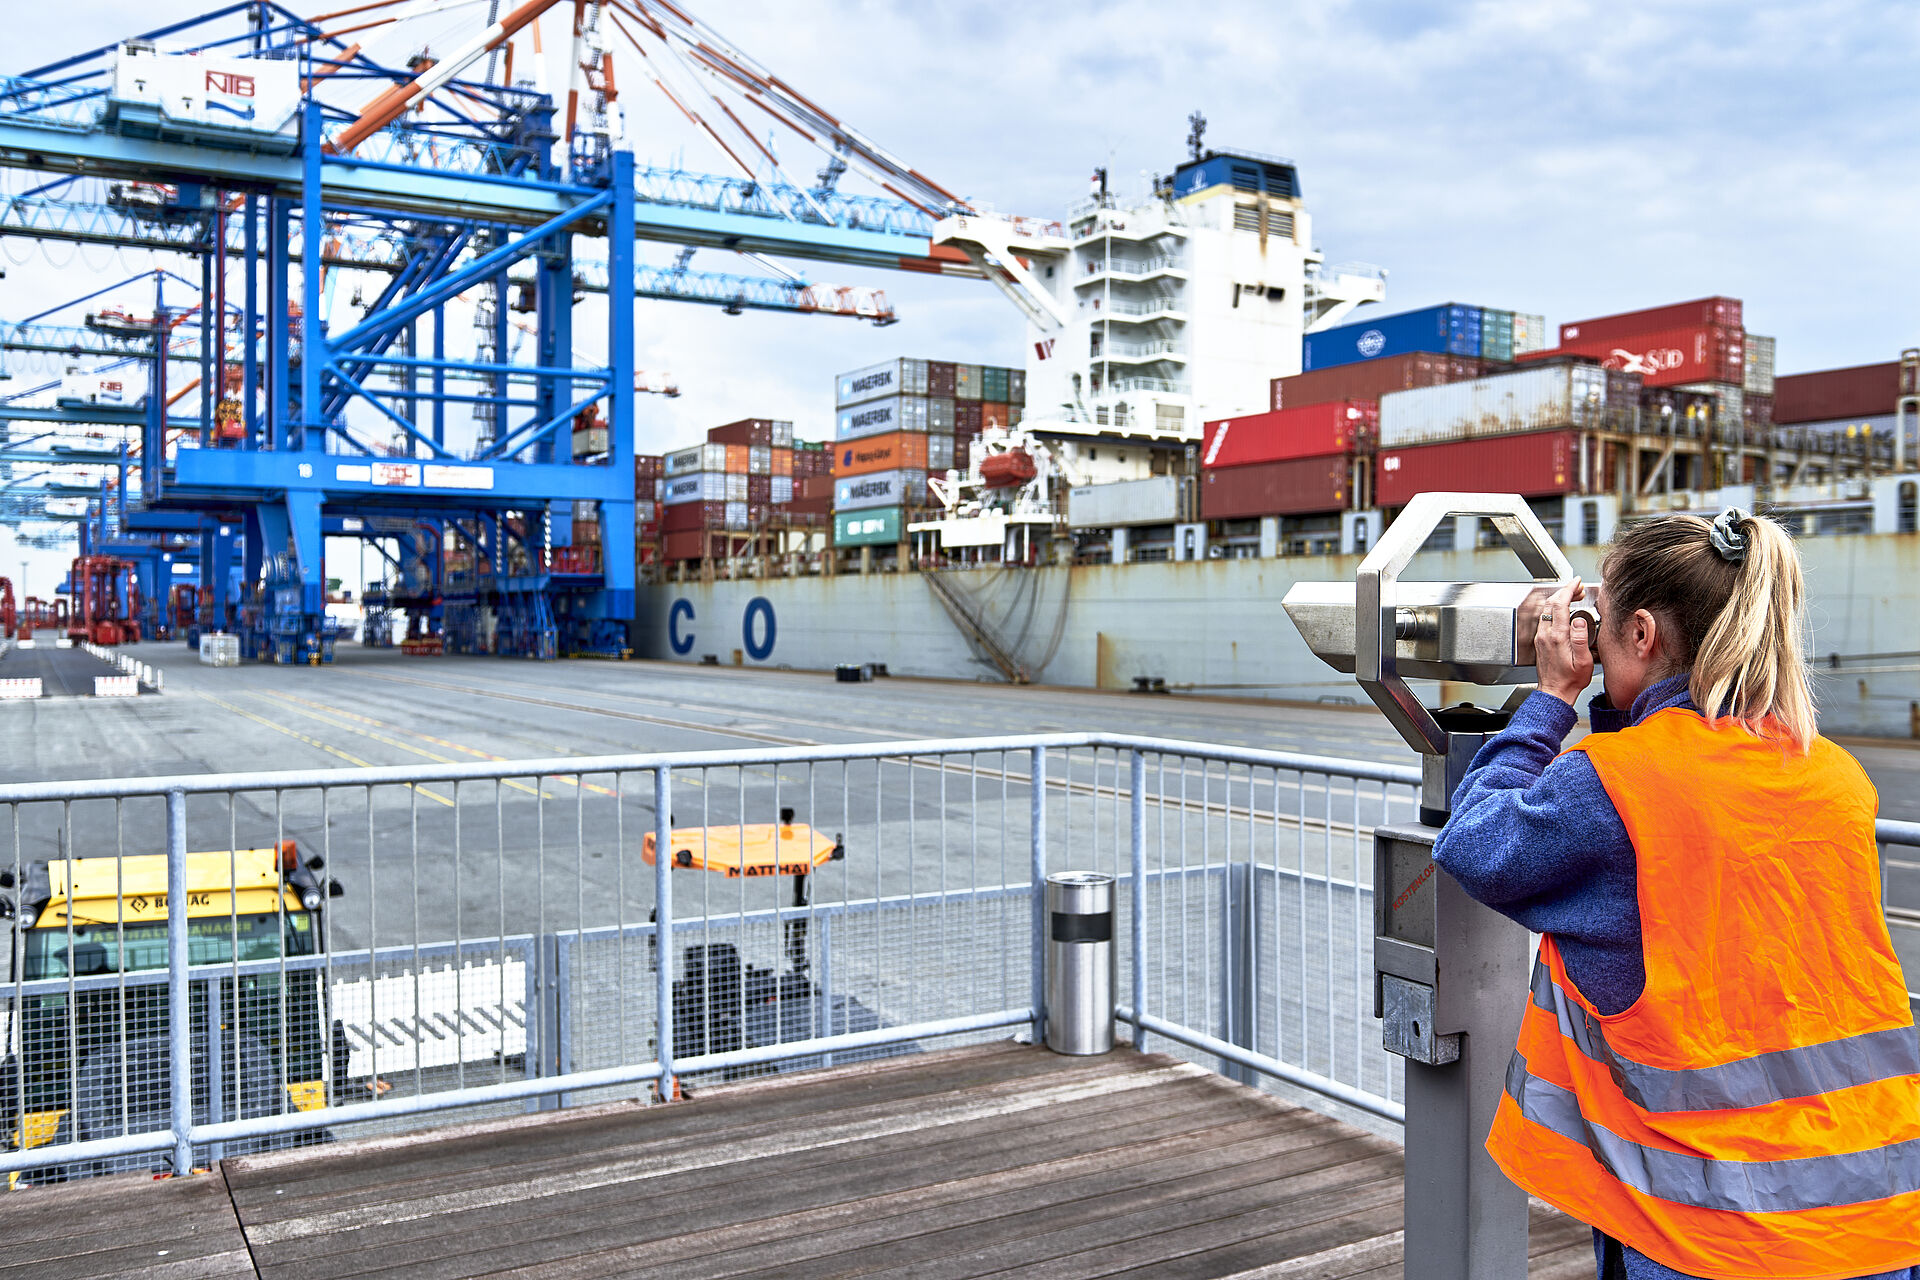 Frau mit Warnweste, rechts im Bild, schaut vom Aussichtspunkt durch ein Fernglas auf das Containerterminal, rechts im bild